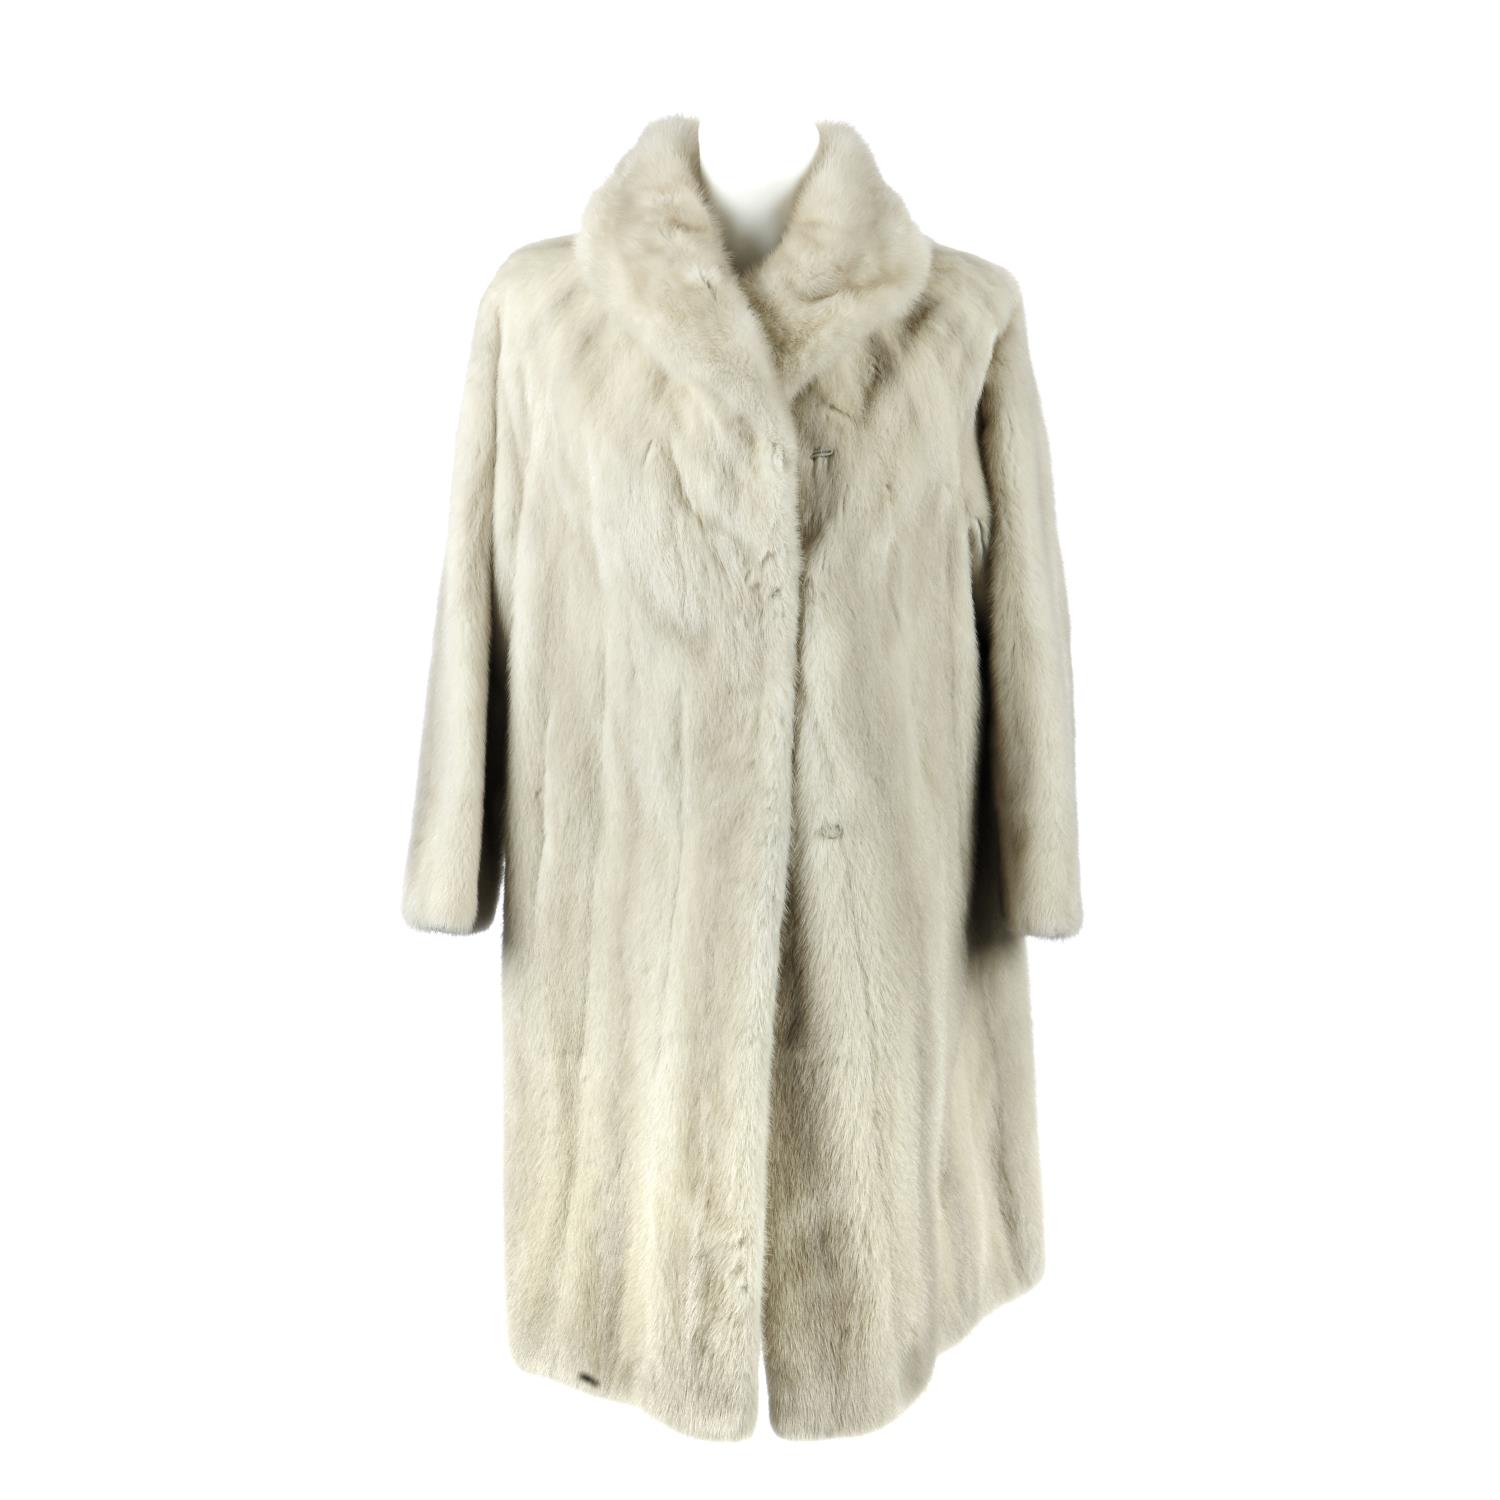 An azurene mink full-length coat.